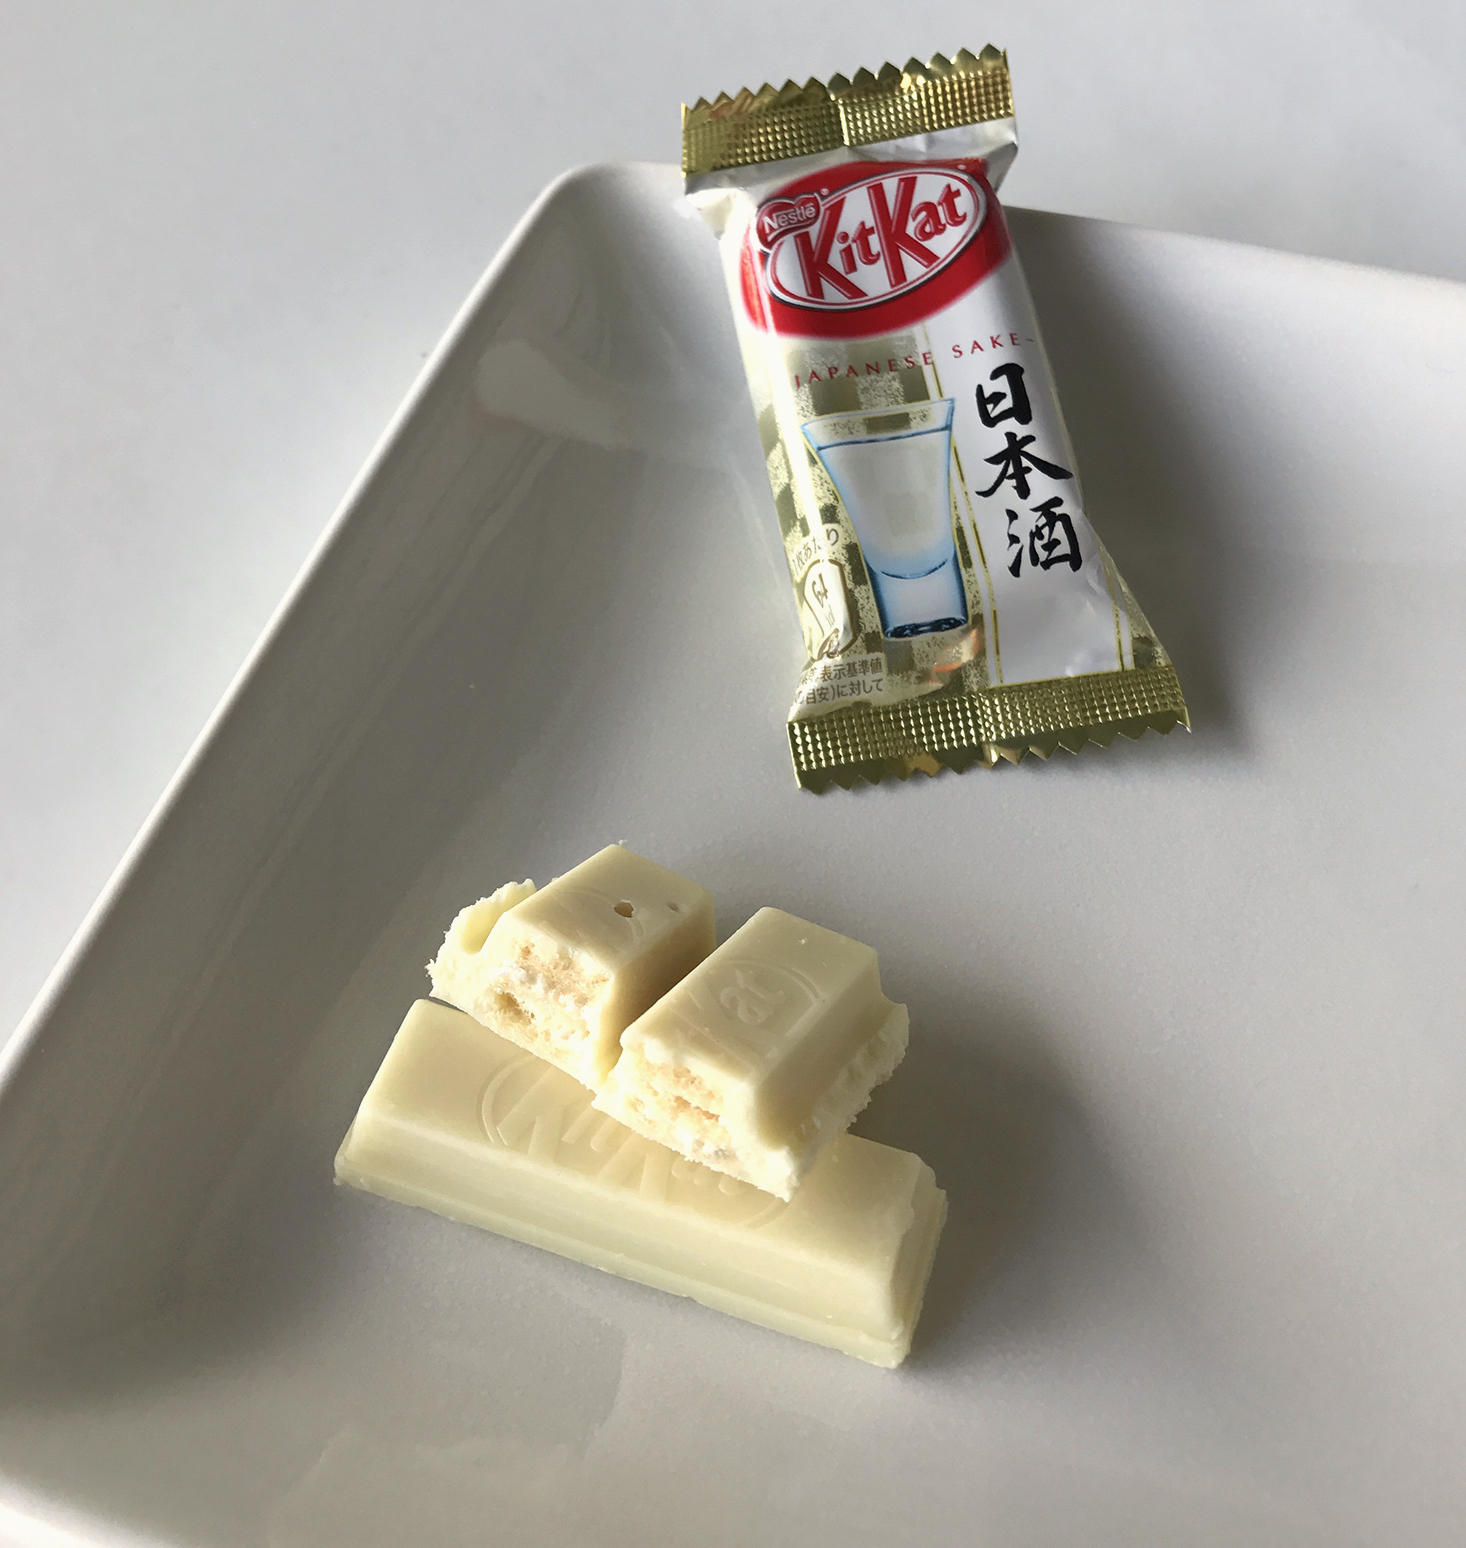 Bokksu-February-2017-Sake-Kit-Kat